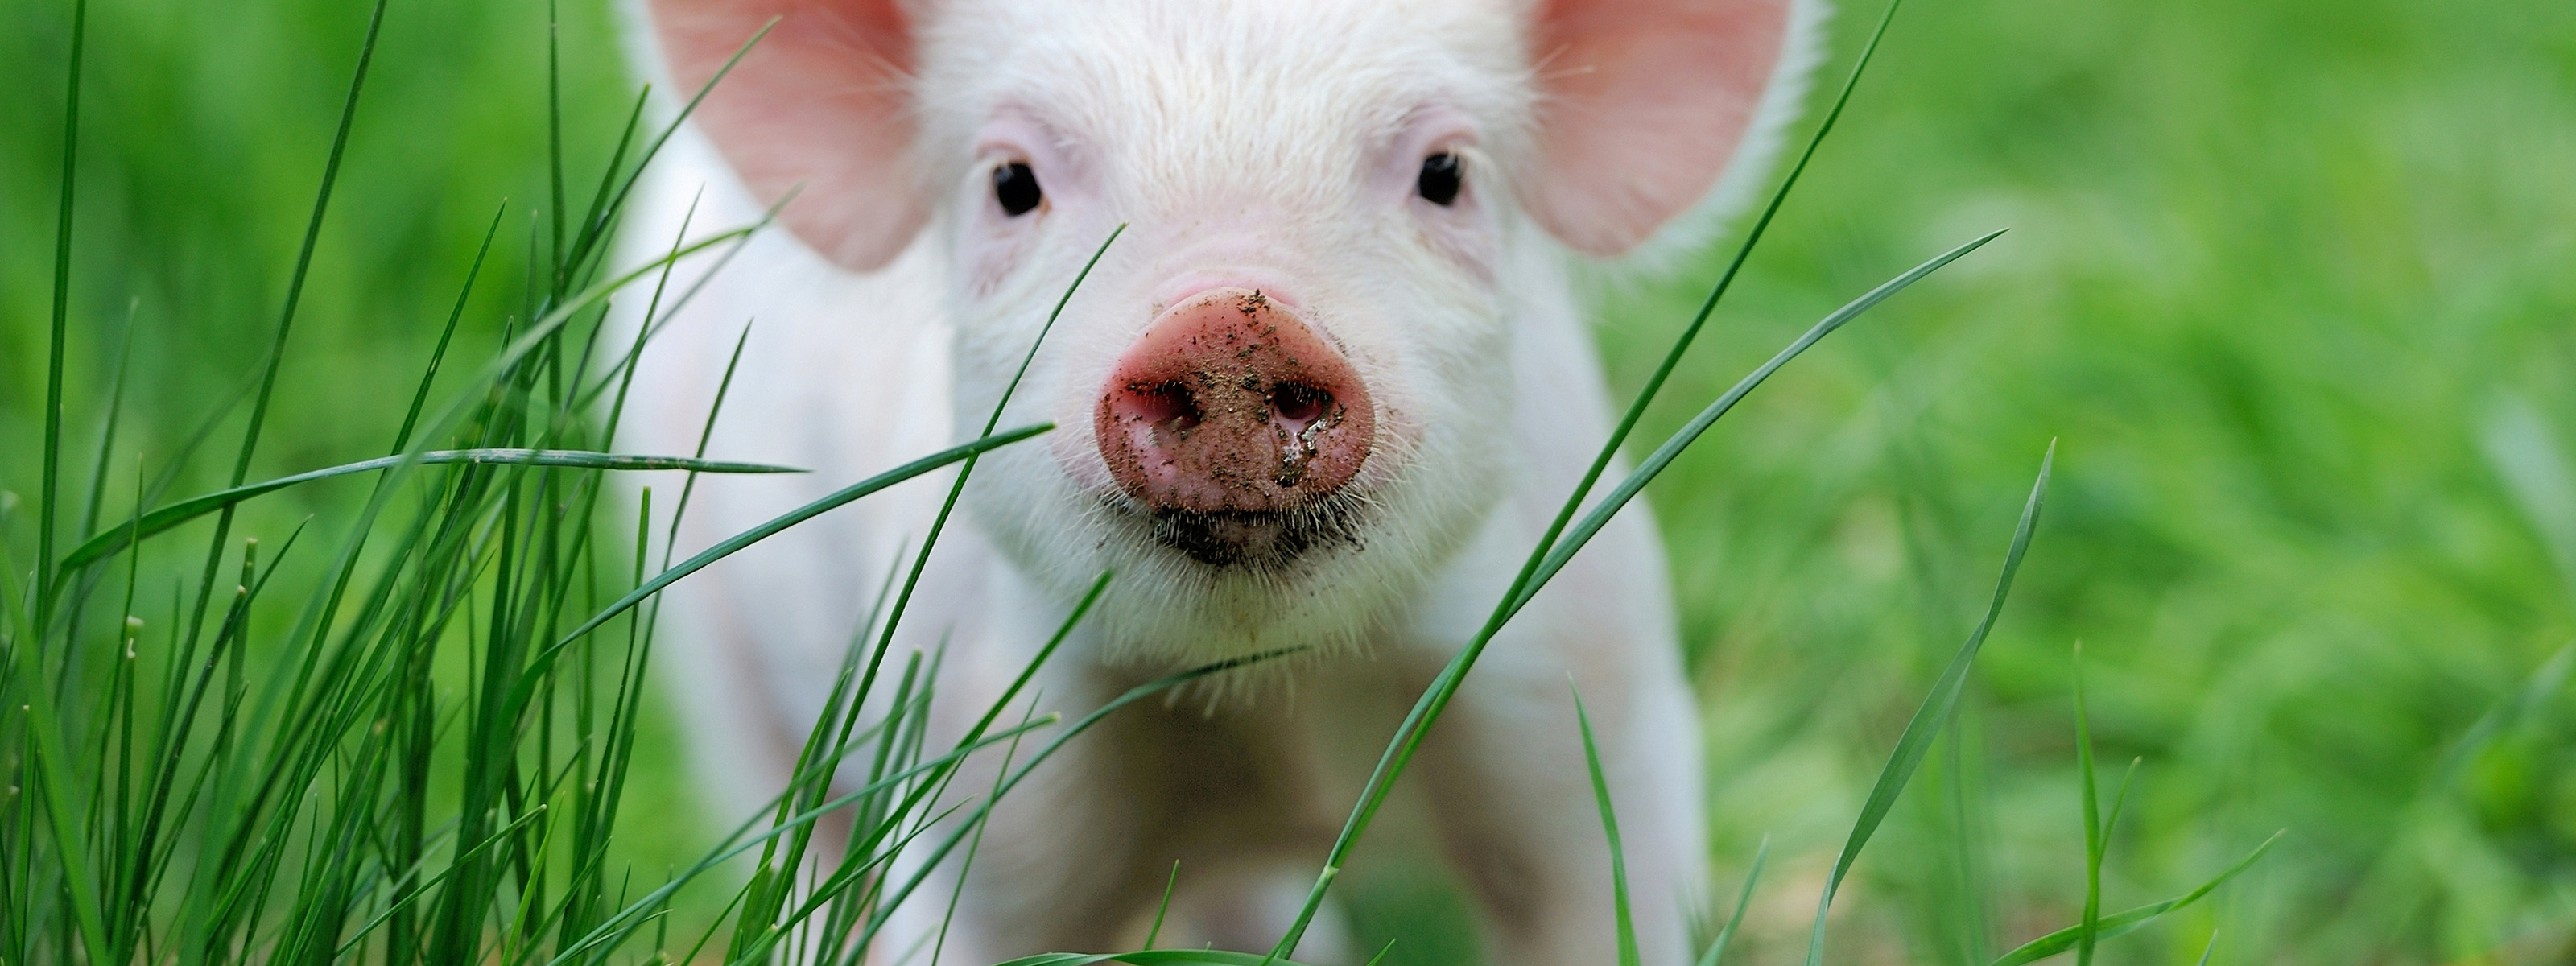 Х свиньи. Свинья. Красивый поросенок. Поросята на траве. Животные свинья.